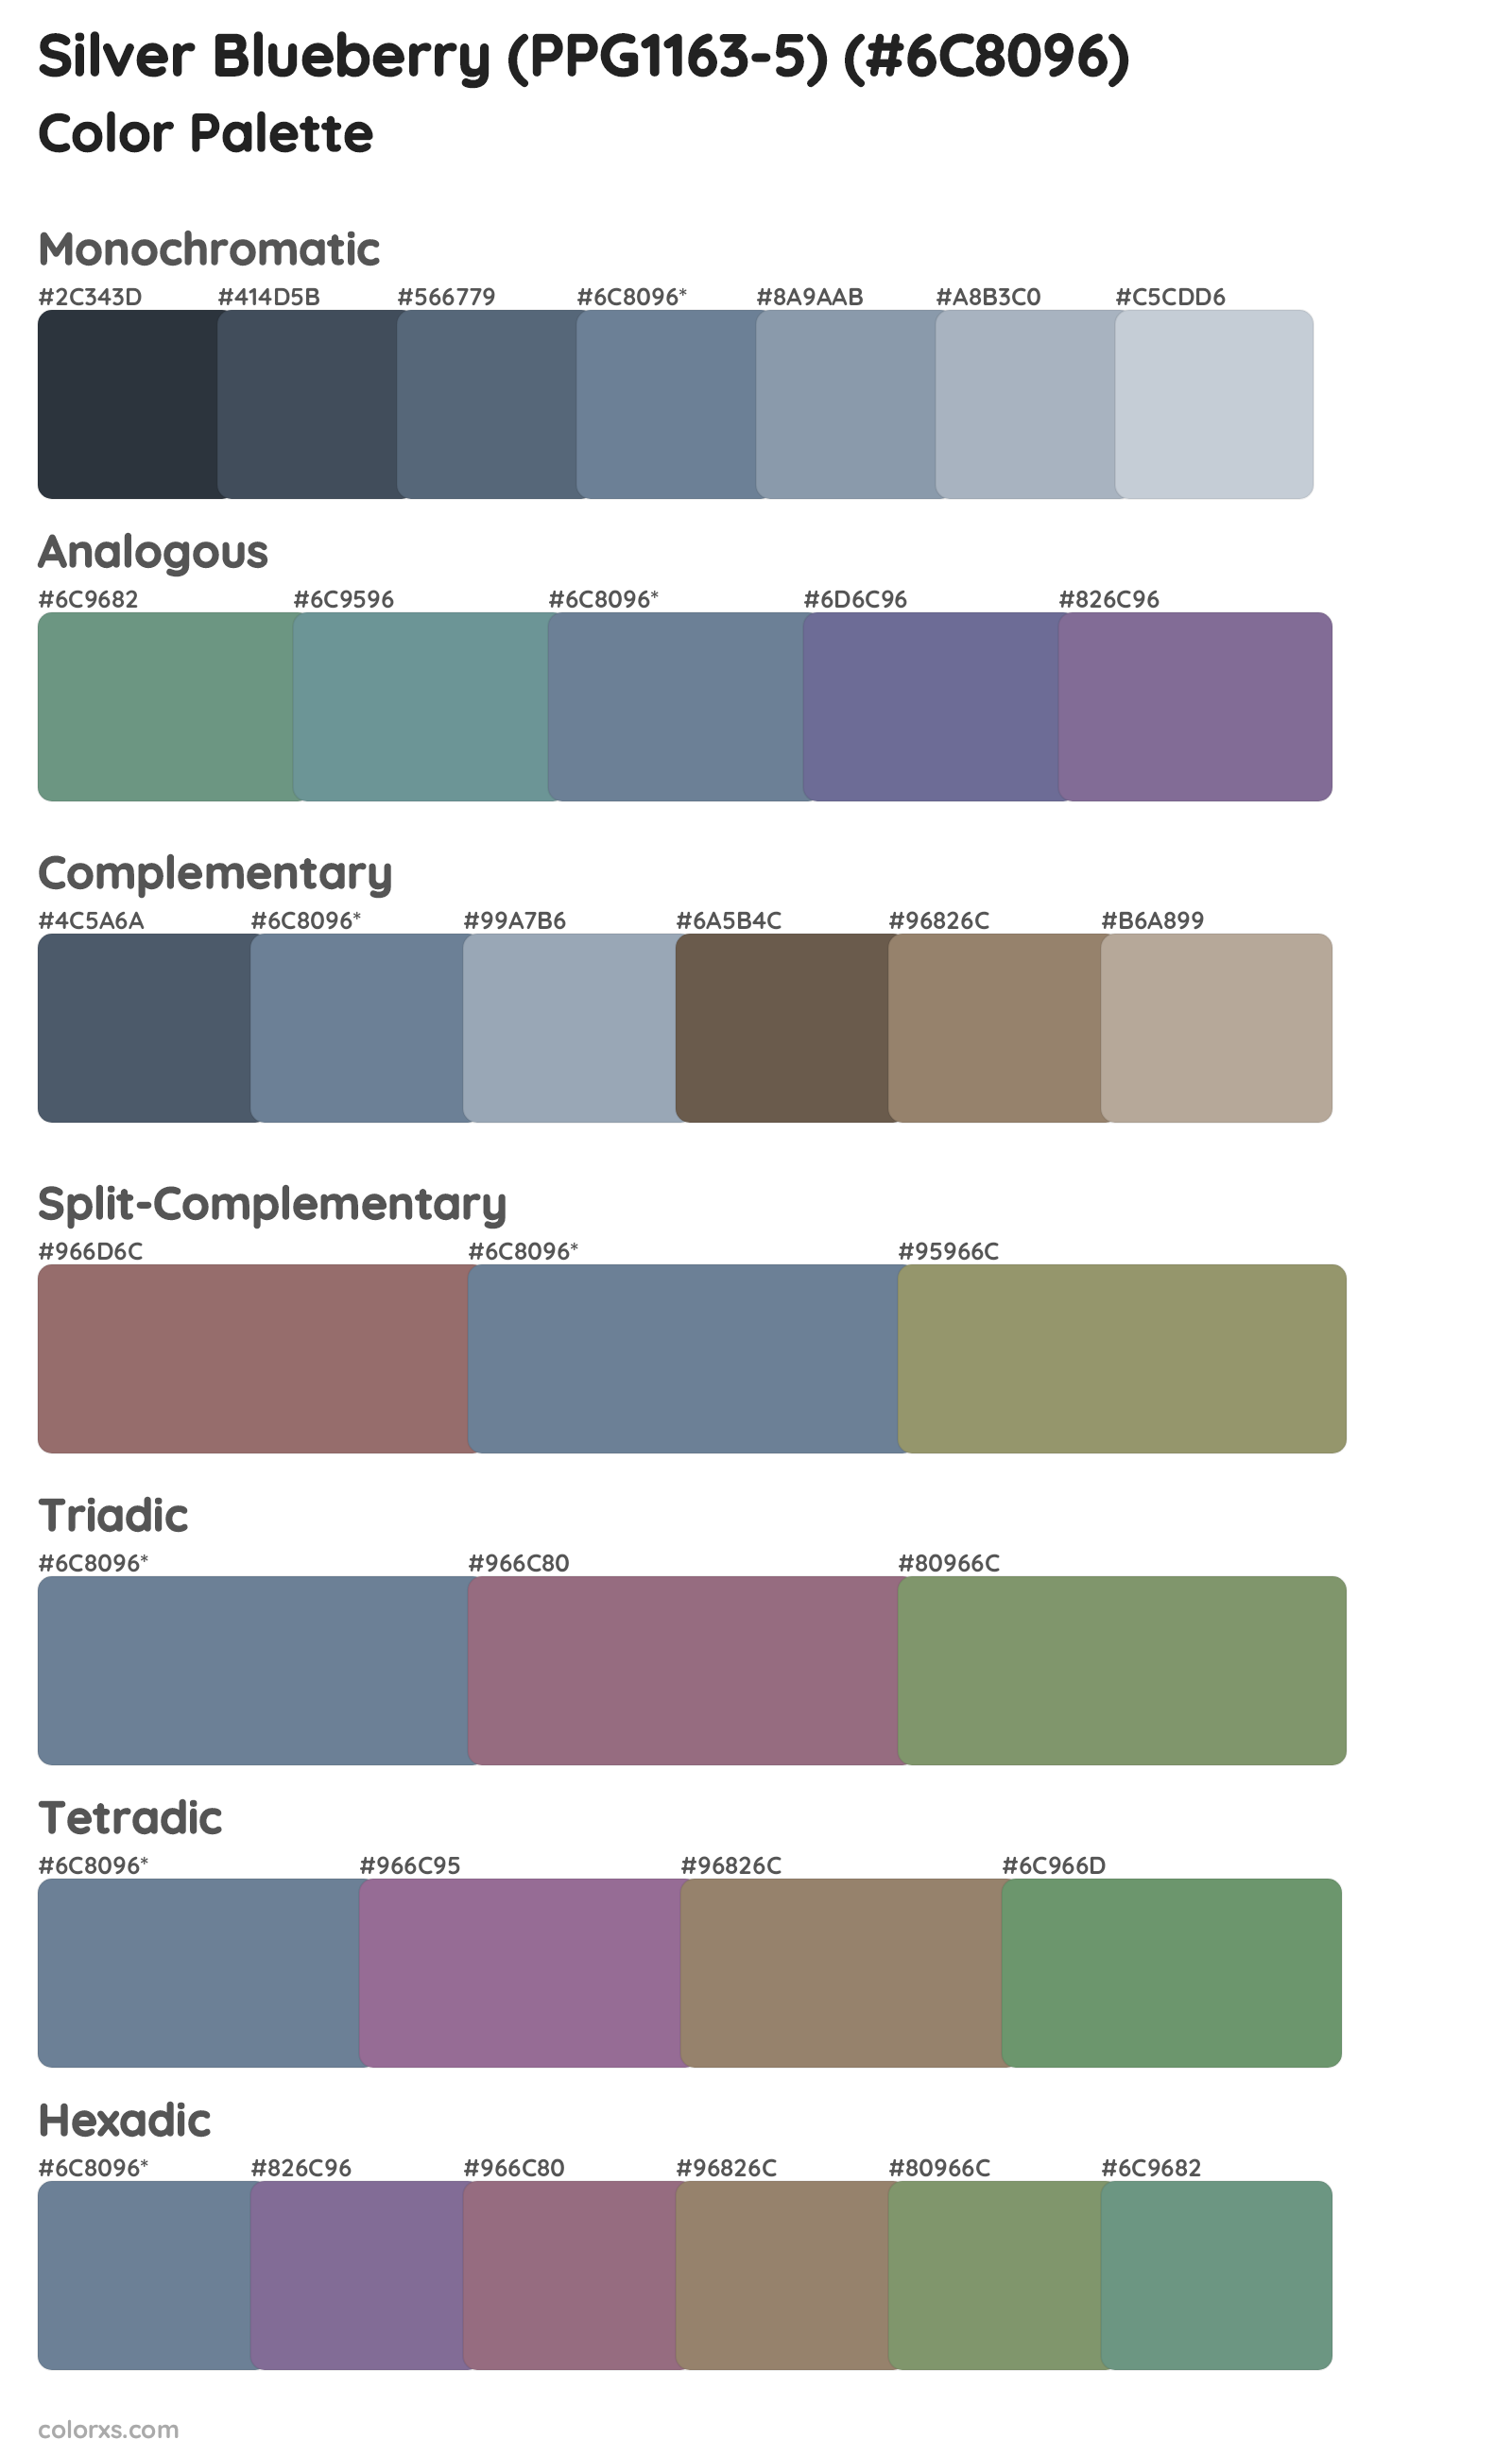 Silver Blueberry (PPG1163-5) Color Scheme Palettes